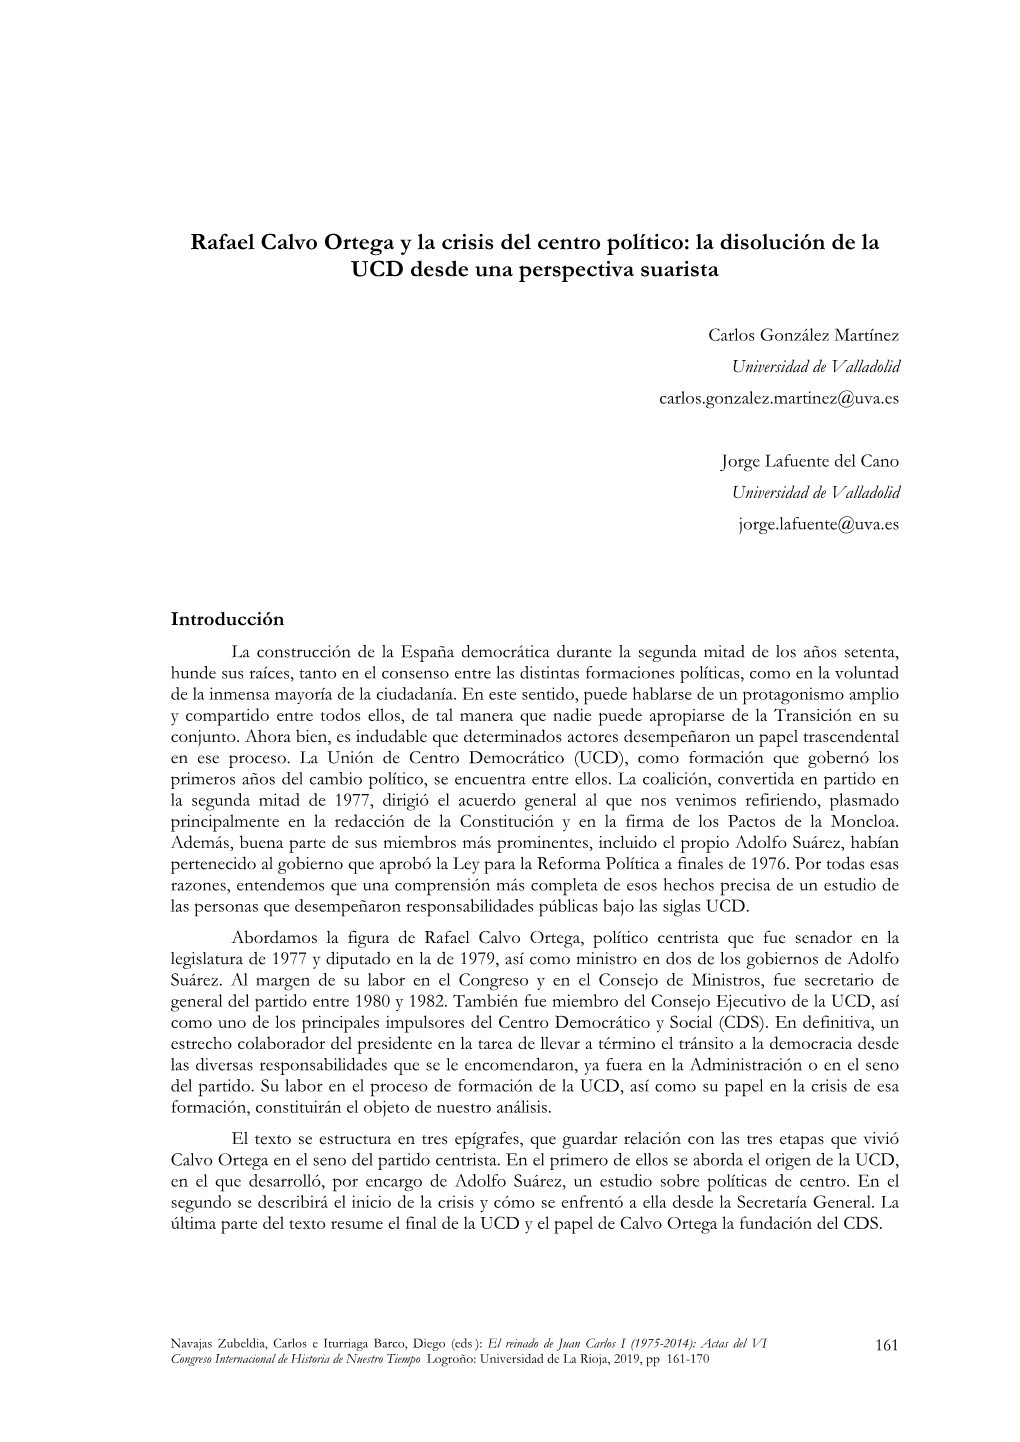 Rafael Calvo Ortega Y La Crisis Del Centro Político: La Disolución De La UCD Desde Una Perspectiva Suarista